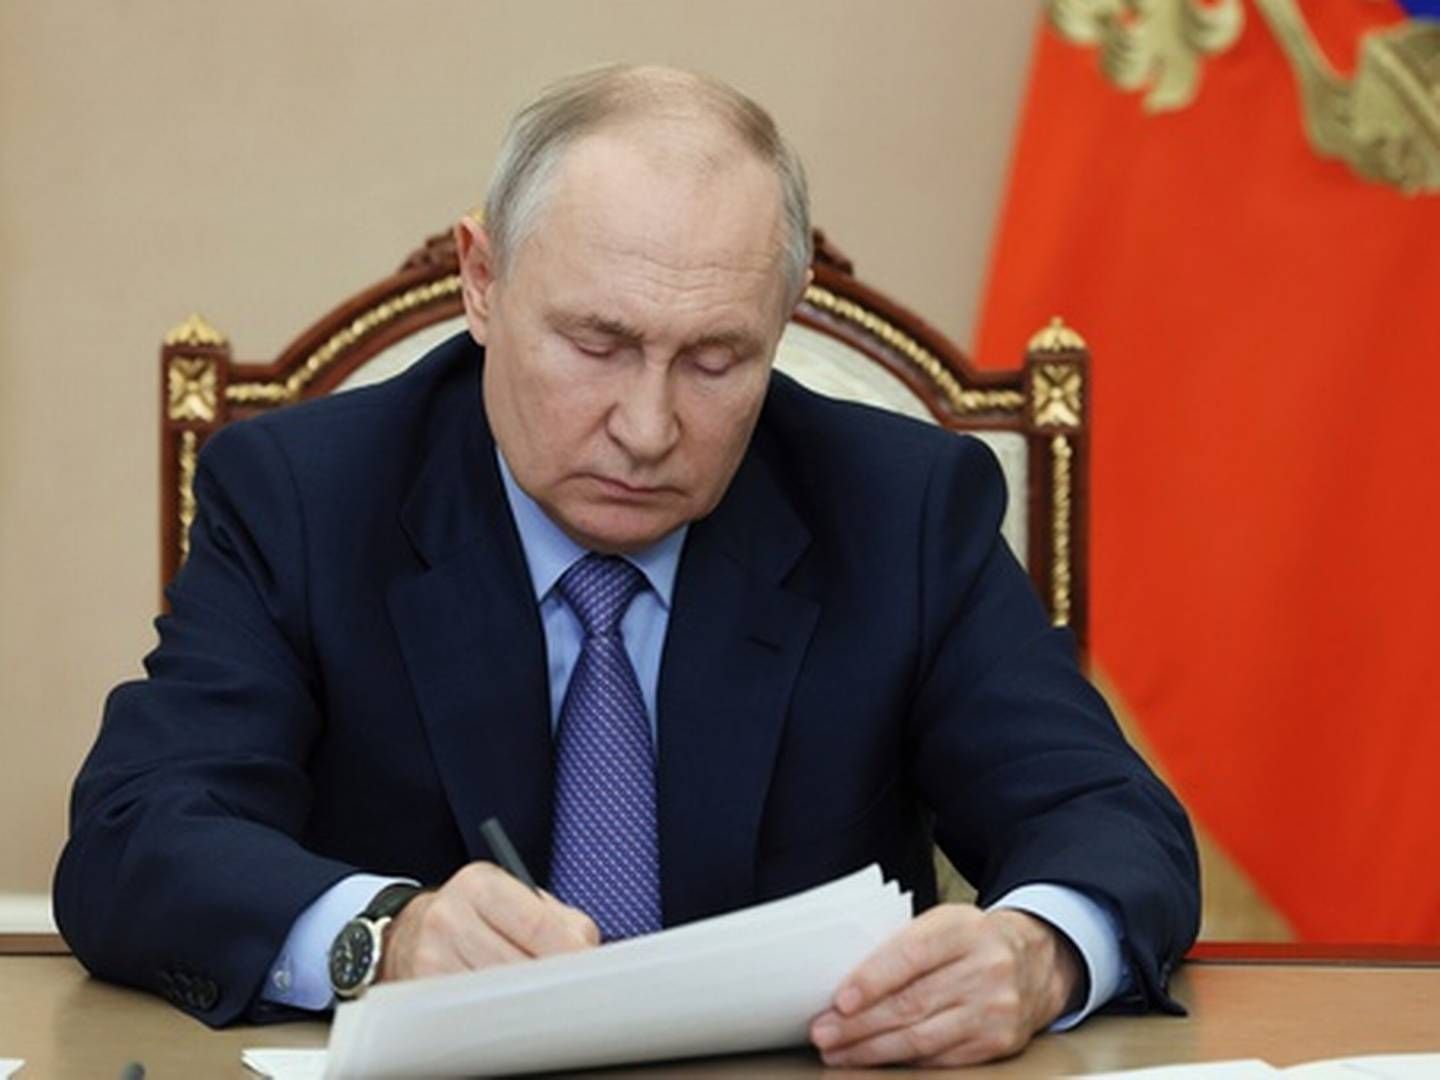 BEKYMRET: Putin oppfordrer blant annet regjeringen til å samarbeide tettere med oljeselskapene for å senke prisene. | Foto: Mikhail Metzel / Sputnik / Kreml via AP / NTB